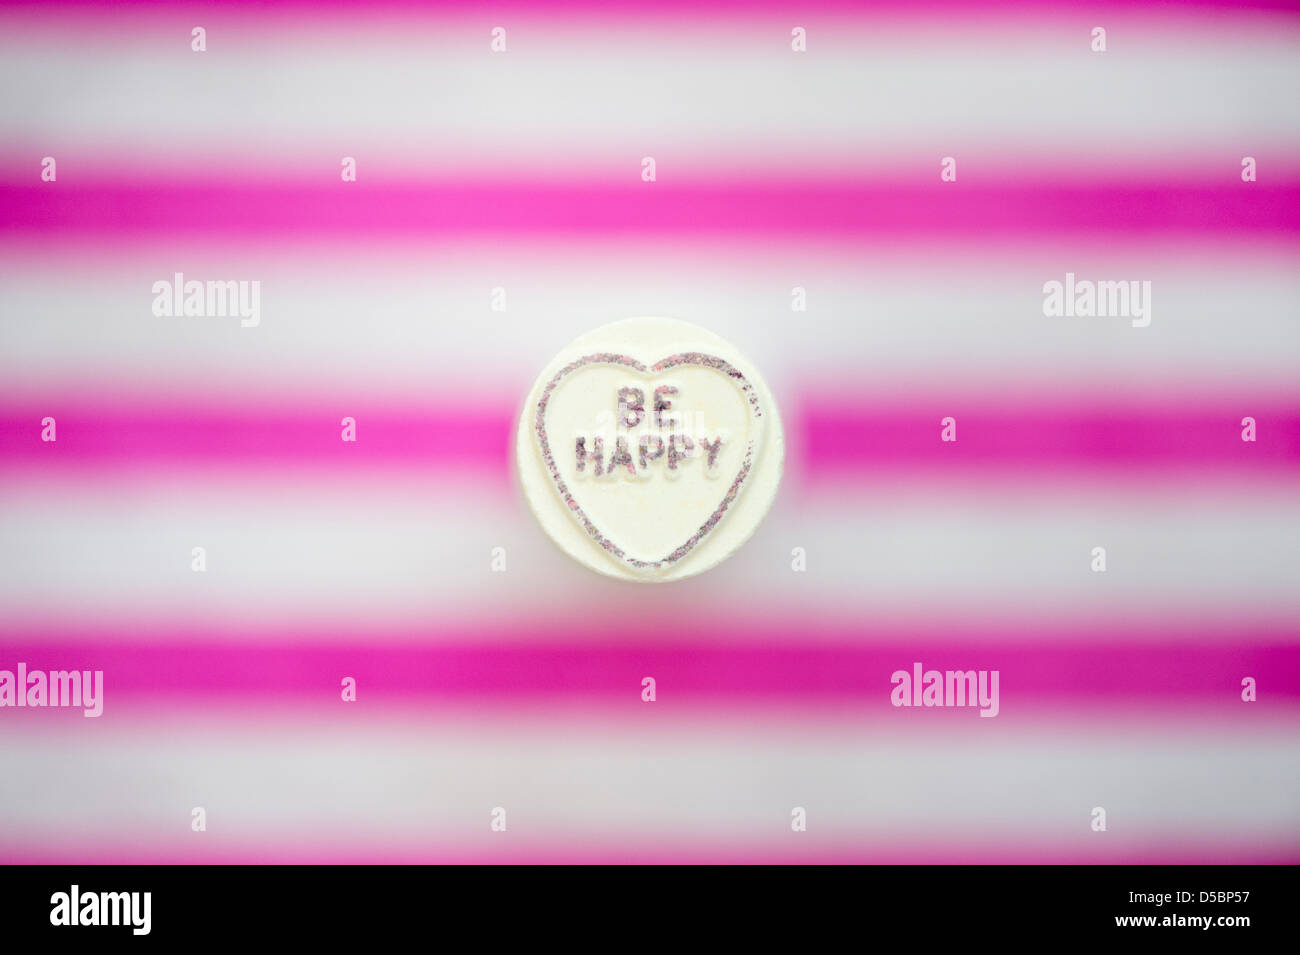 Be Happy. Love hearts. Retro sweet pattern Stock Photo